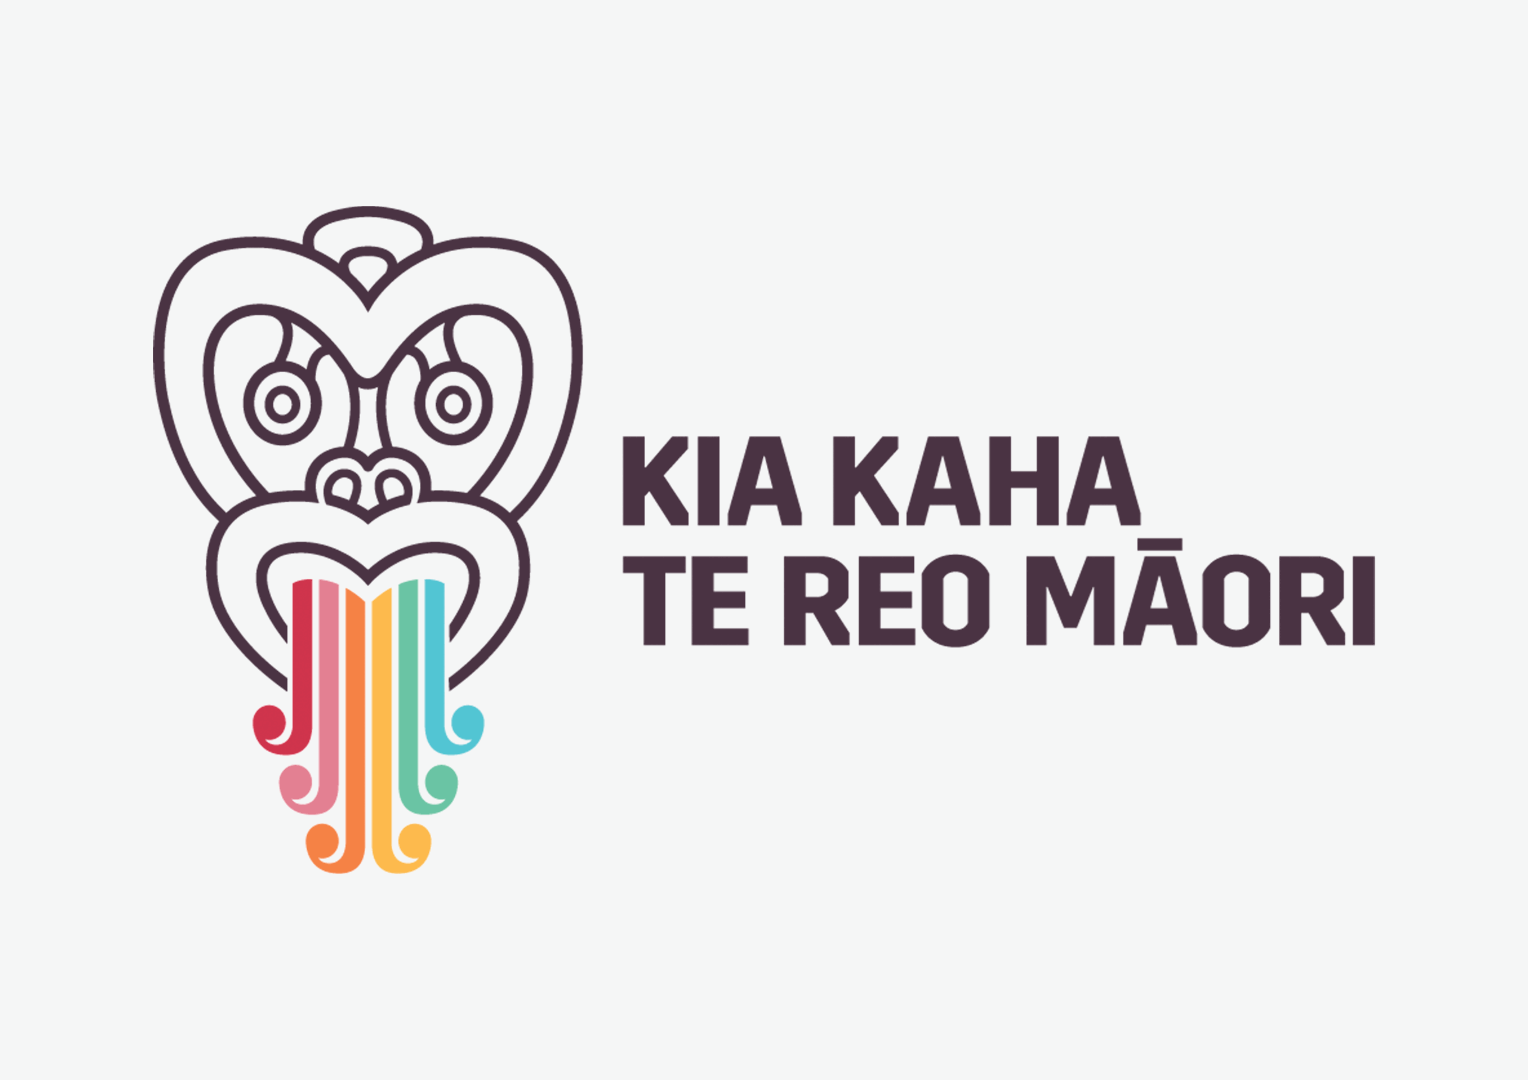 Te Wiki o te reo Māori - Addington Te Kura